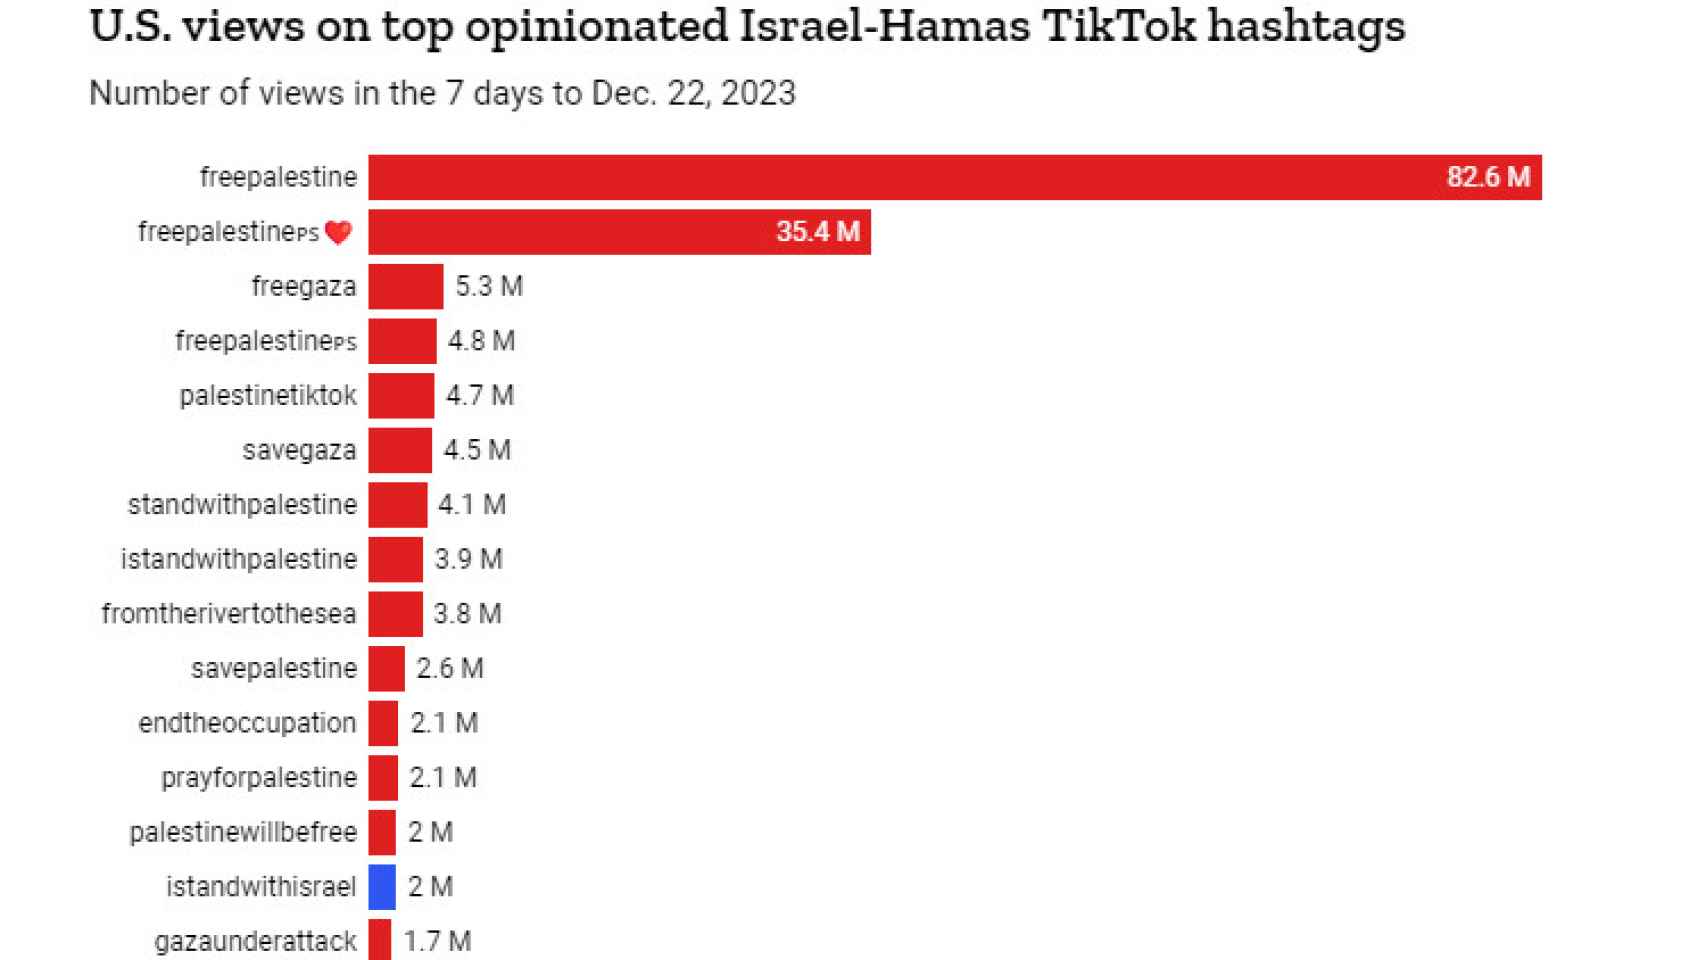 Gráfico elaborado por la revista Time sobre el éxito en TikTok de los principales hashtags sobre Israel y Hamás.